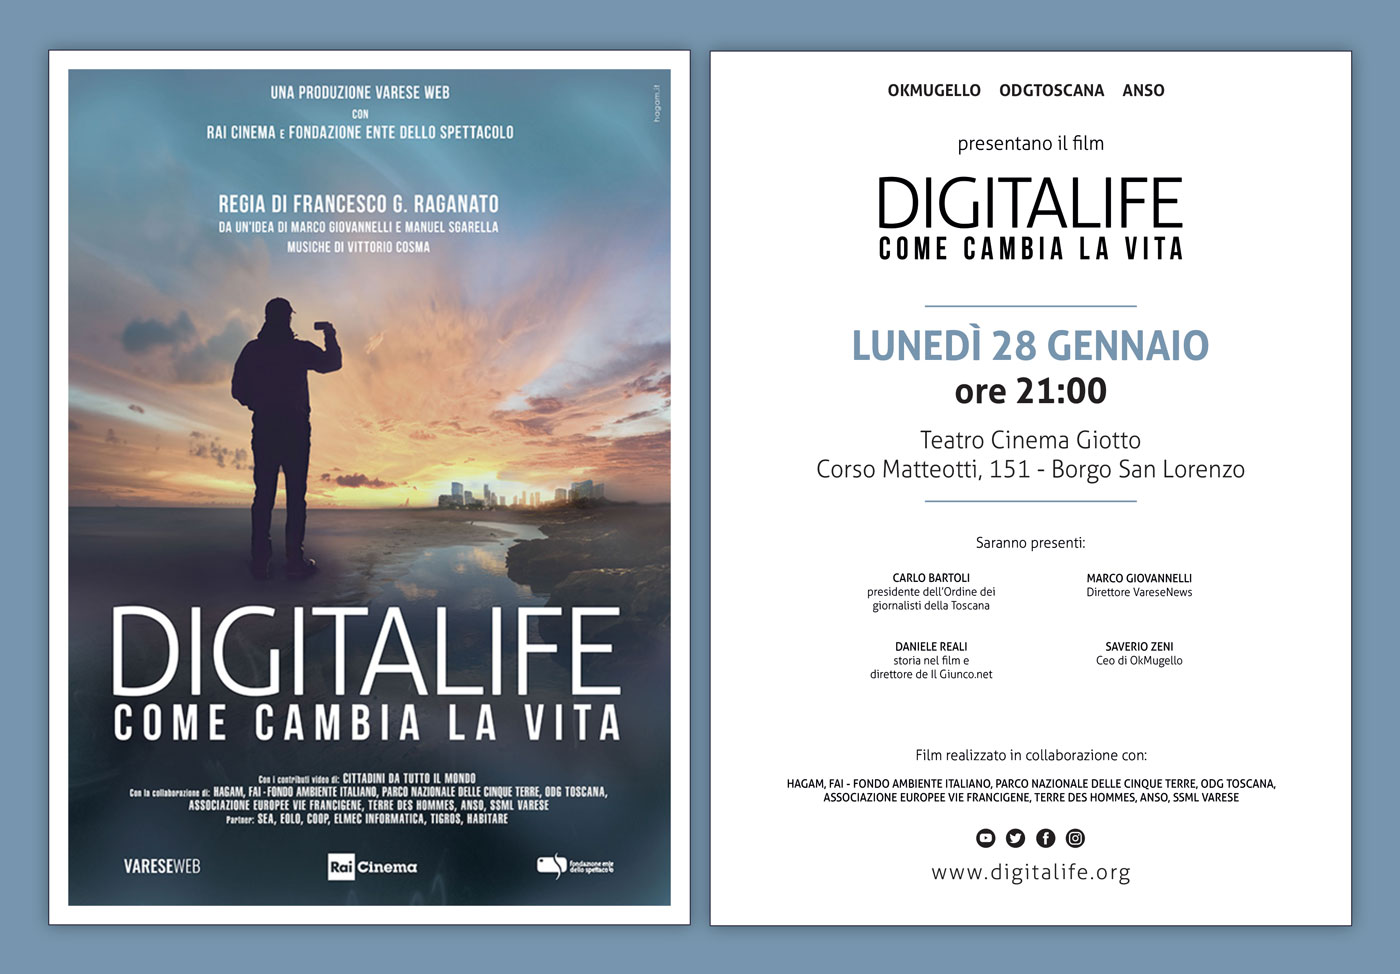 Lunghi applausi per DigitaLife alla prima a Milano. Il 28 gennaio al Teatro giotto